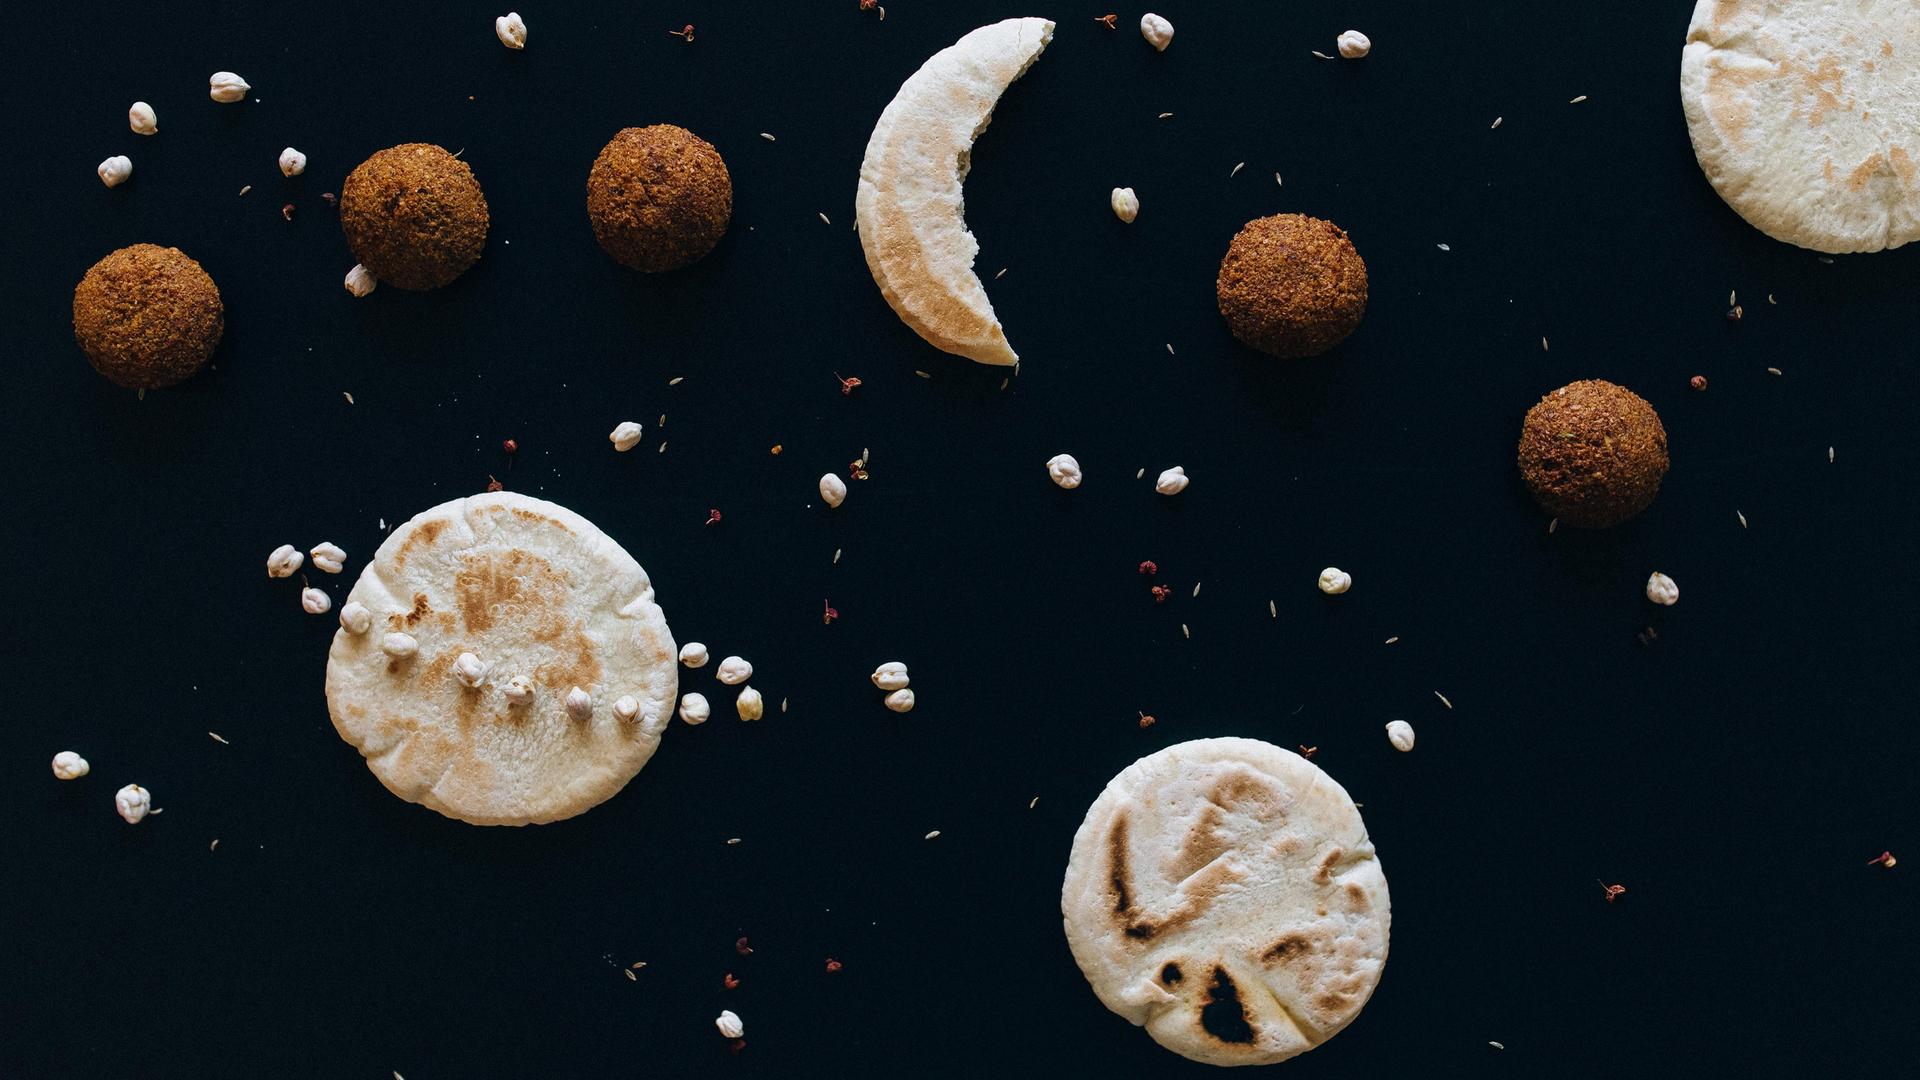 Auf einem dunklen Untergrund liegen diverse Kekse und Nüsse, die den Weltraum mit Monden und Planeten darstellen.